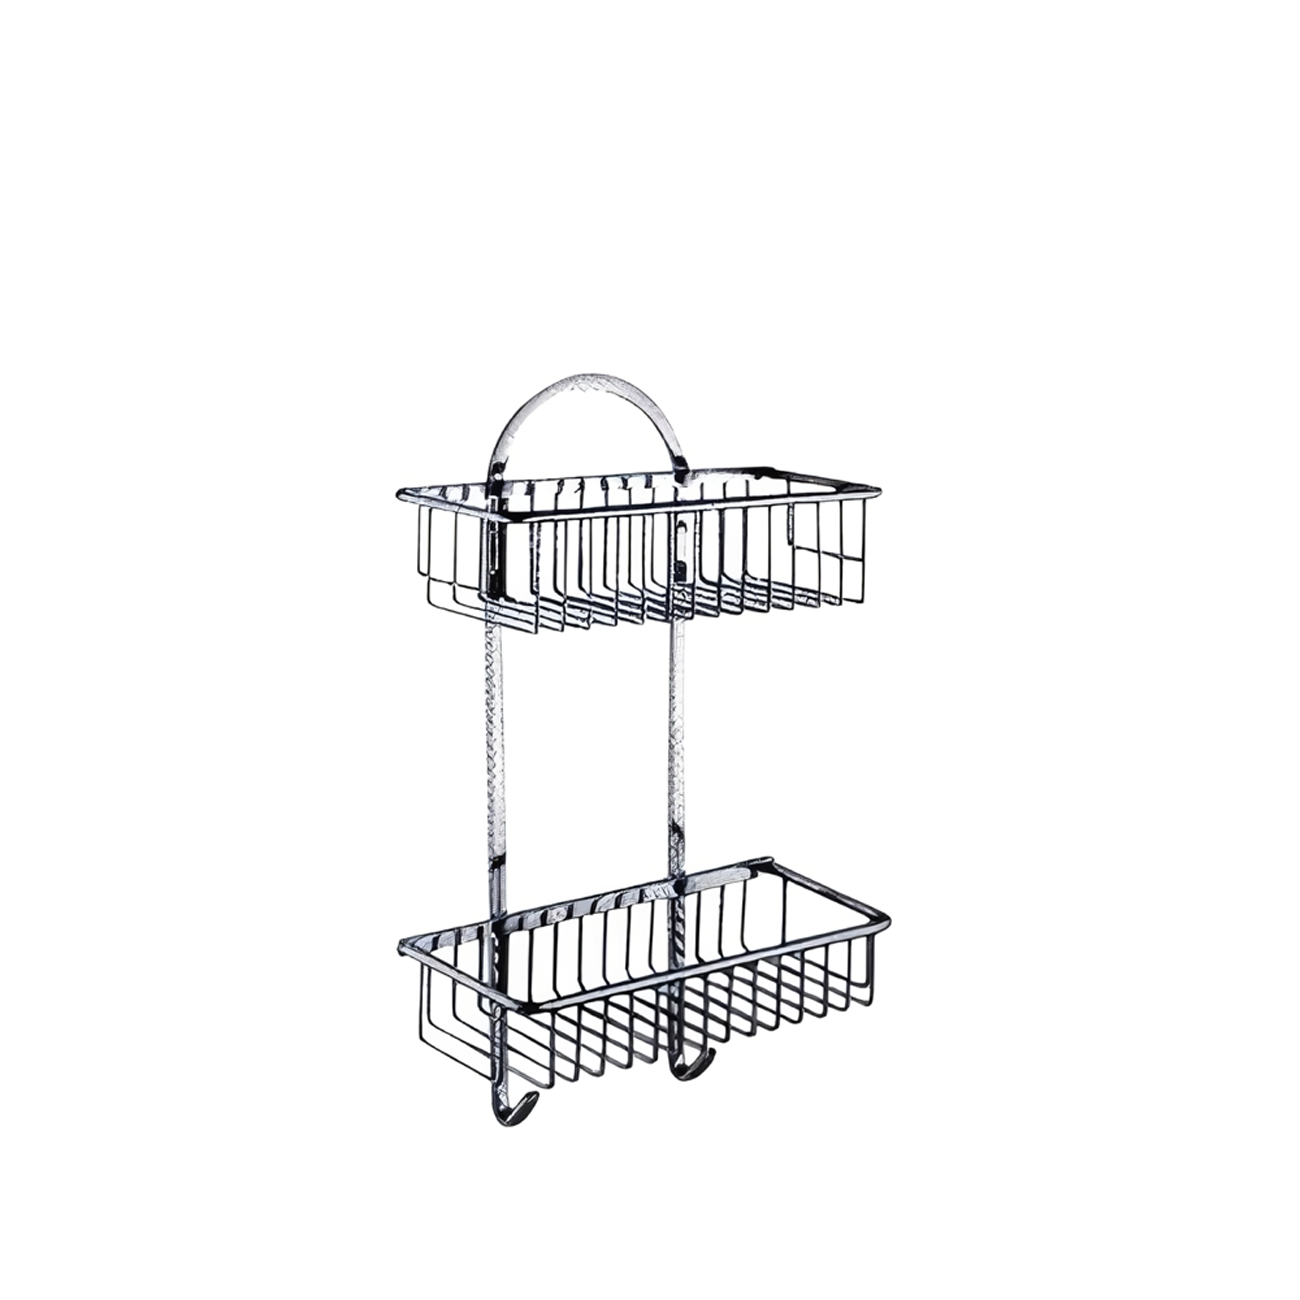 OJ-G3518L 2 Tier Hanging Shower Organizer for Bathroom Shower Basket Stainless Steel Shower Basket